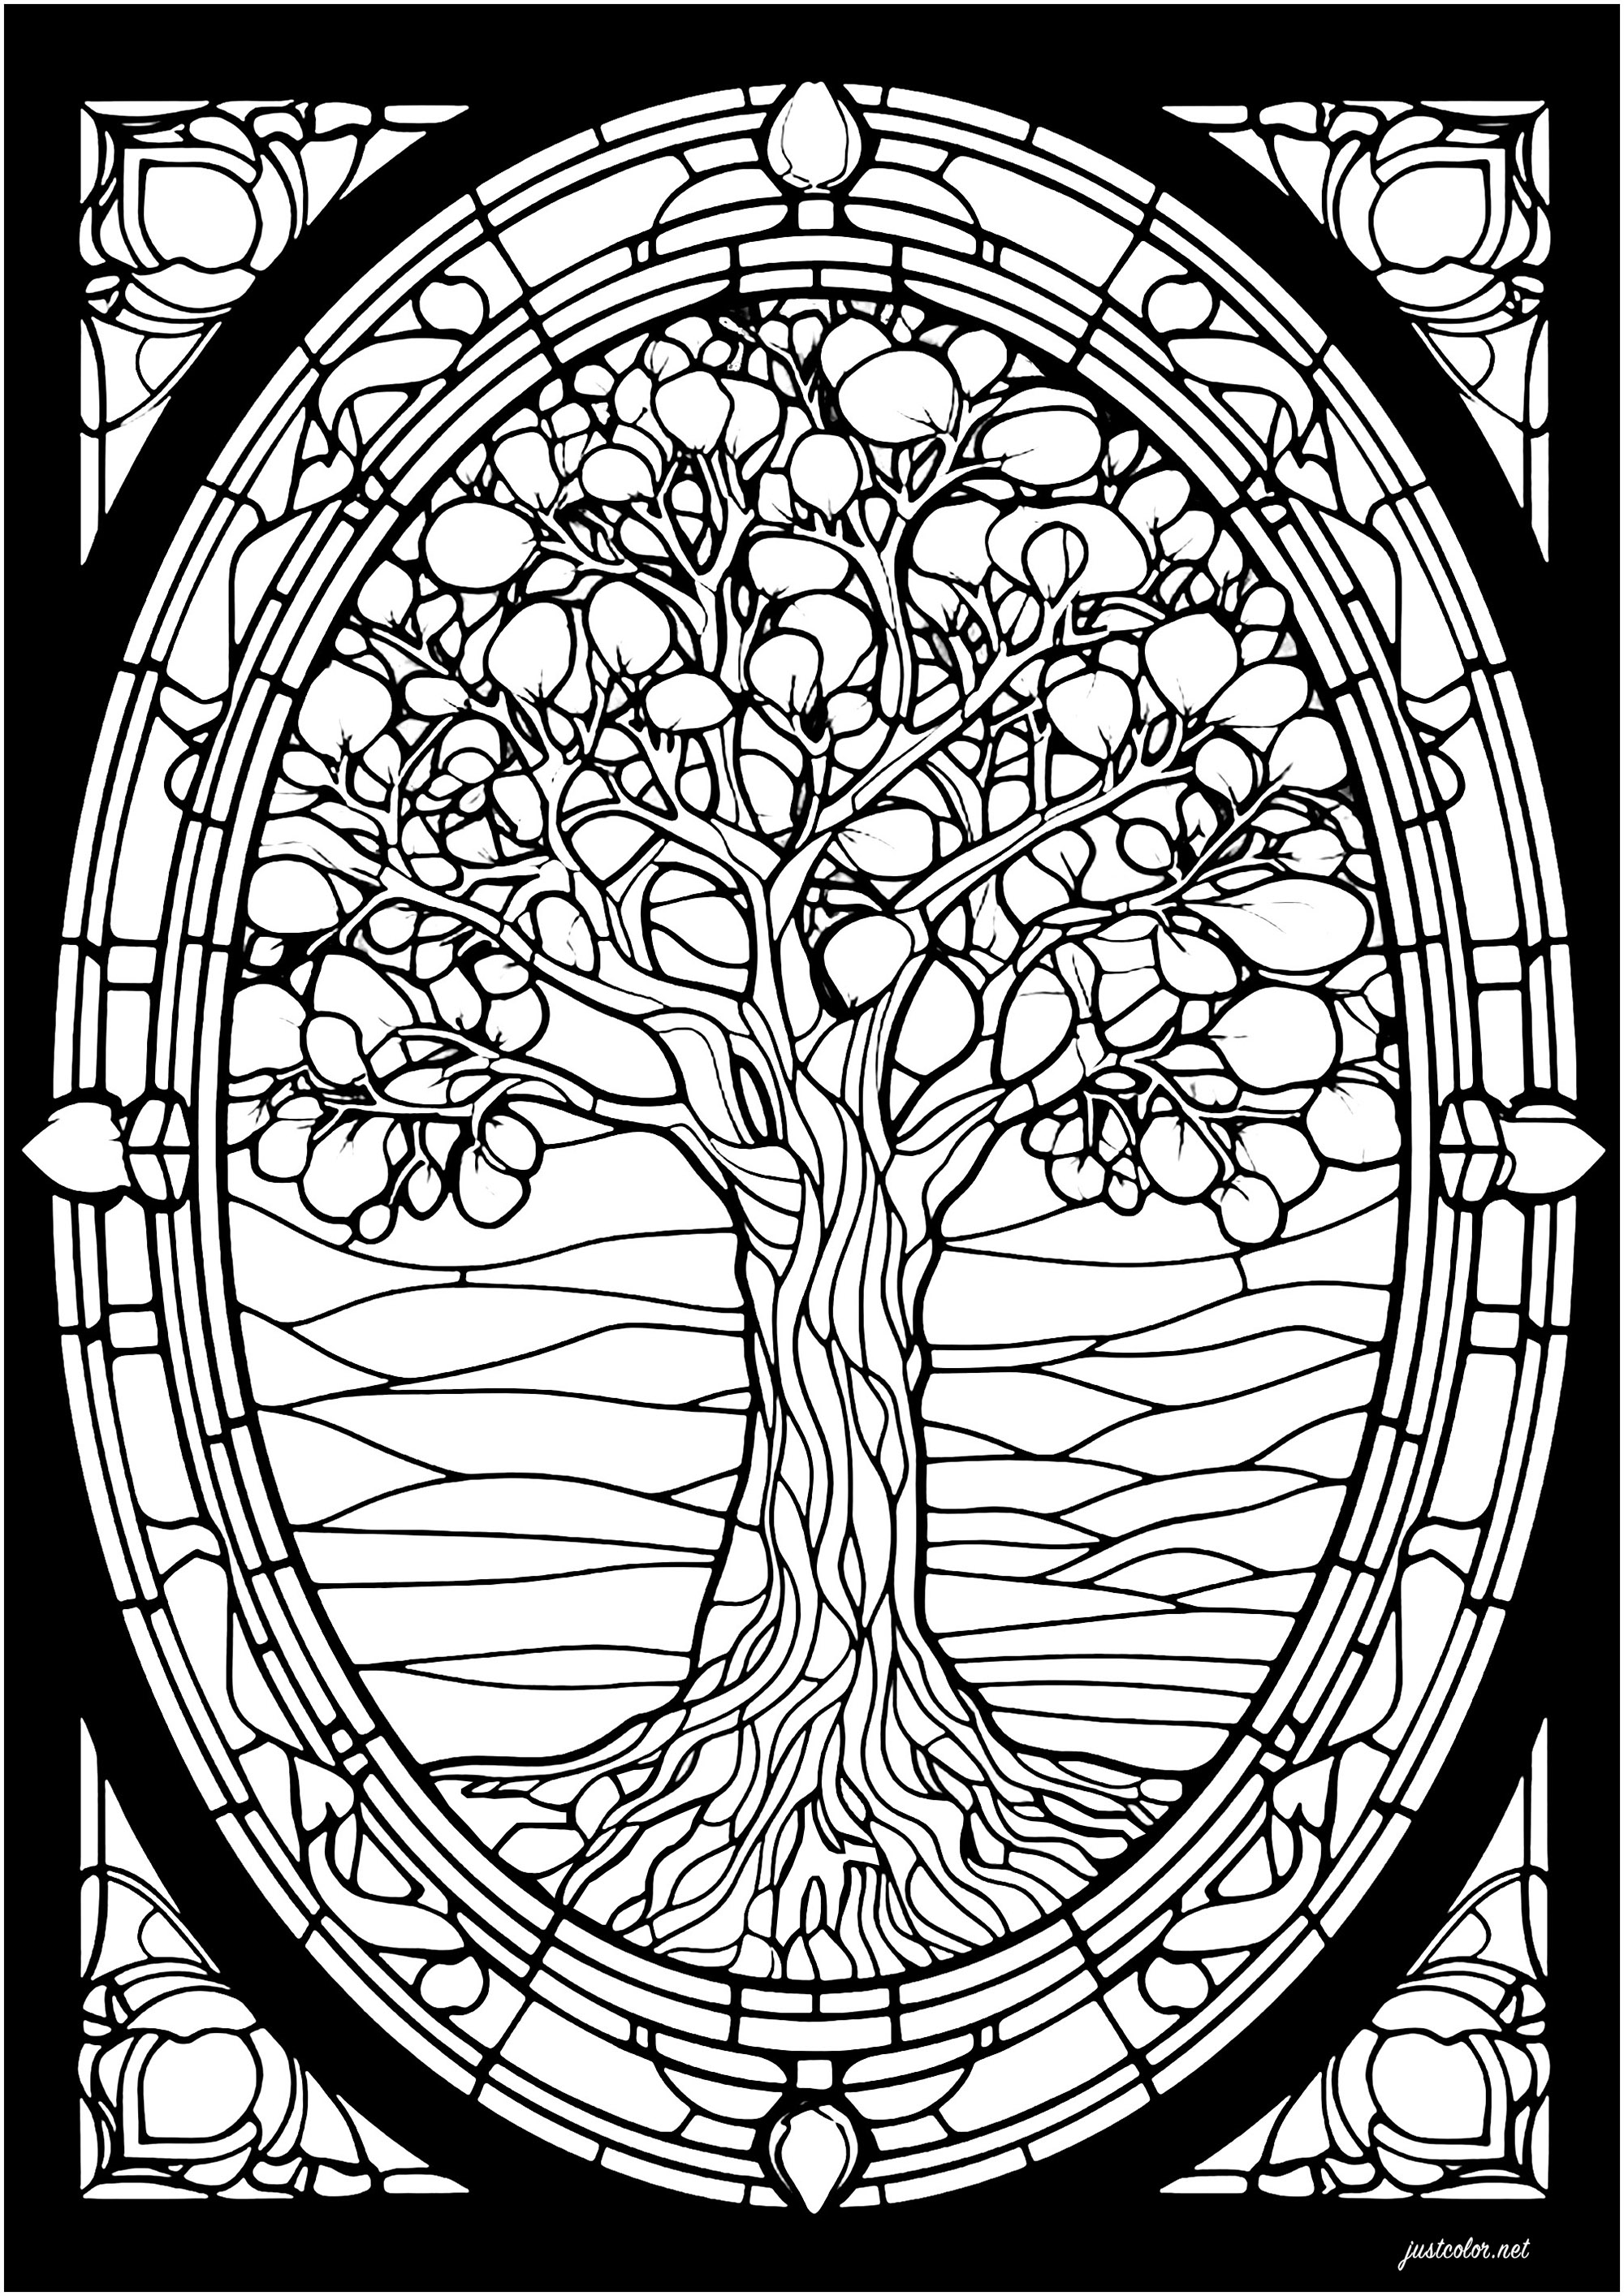 Árbol de vidrieras. Un árbol majestuoso con intrincados dibujos para colorear